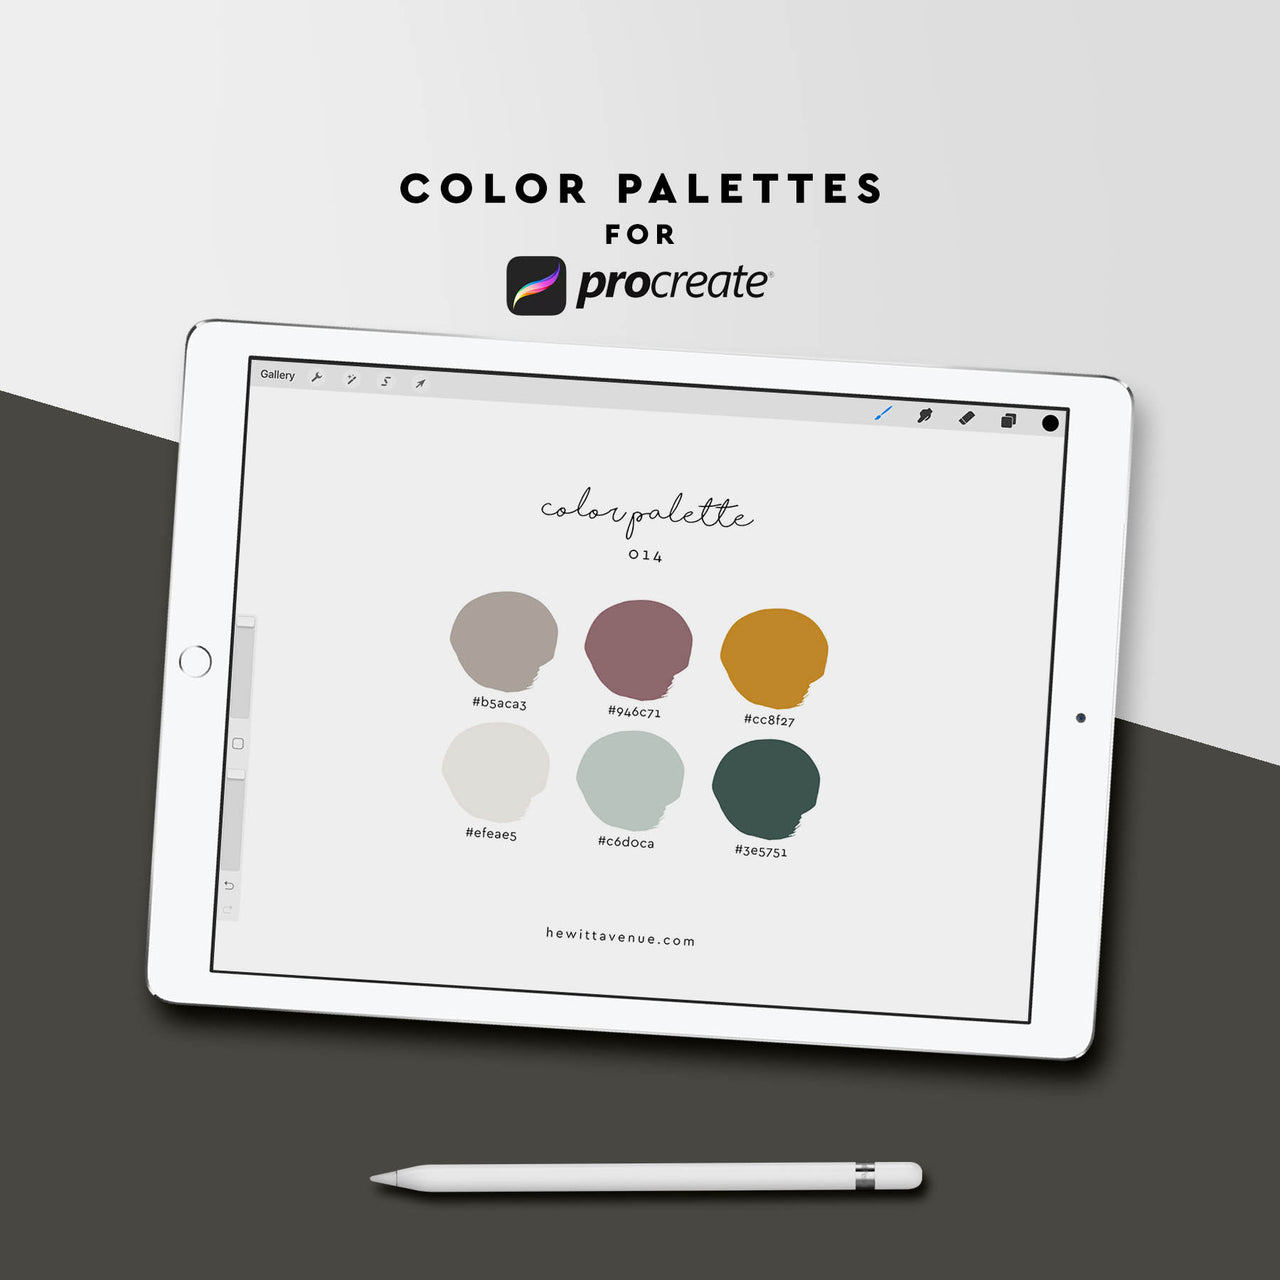 Color Palette 014 - Hewitt Avenue